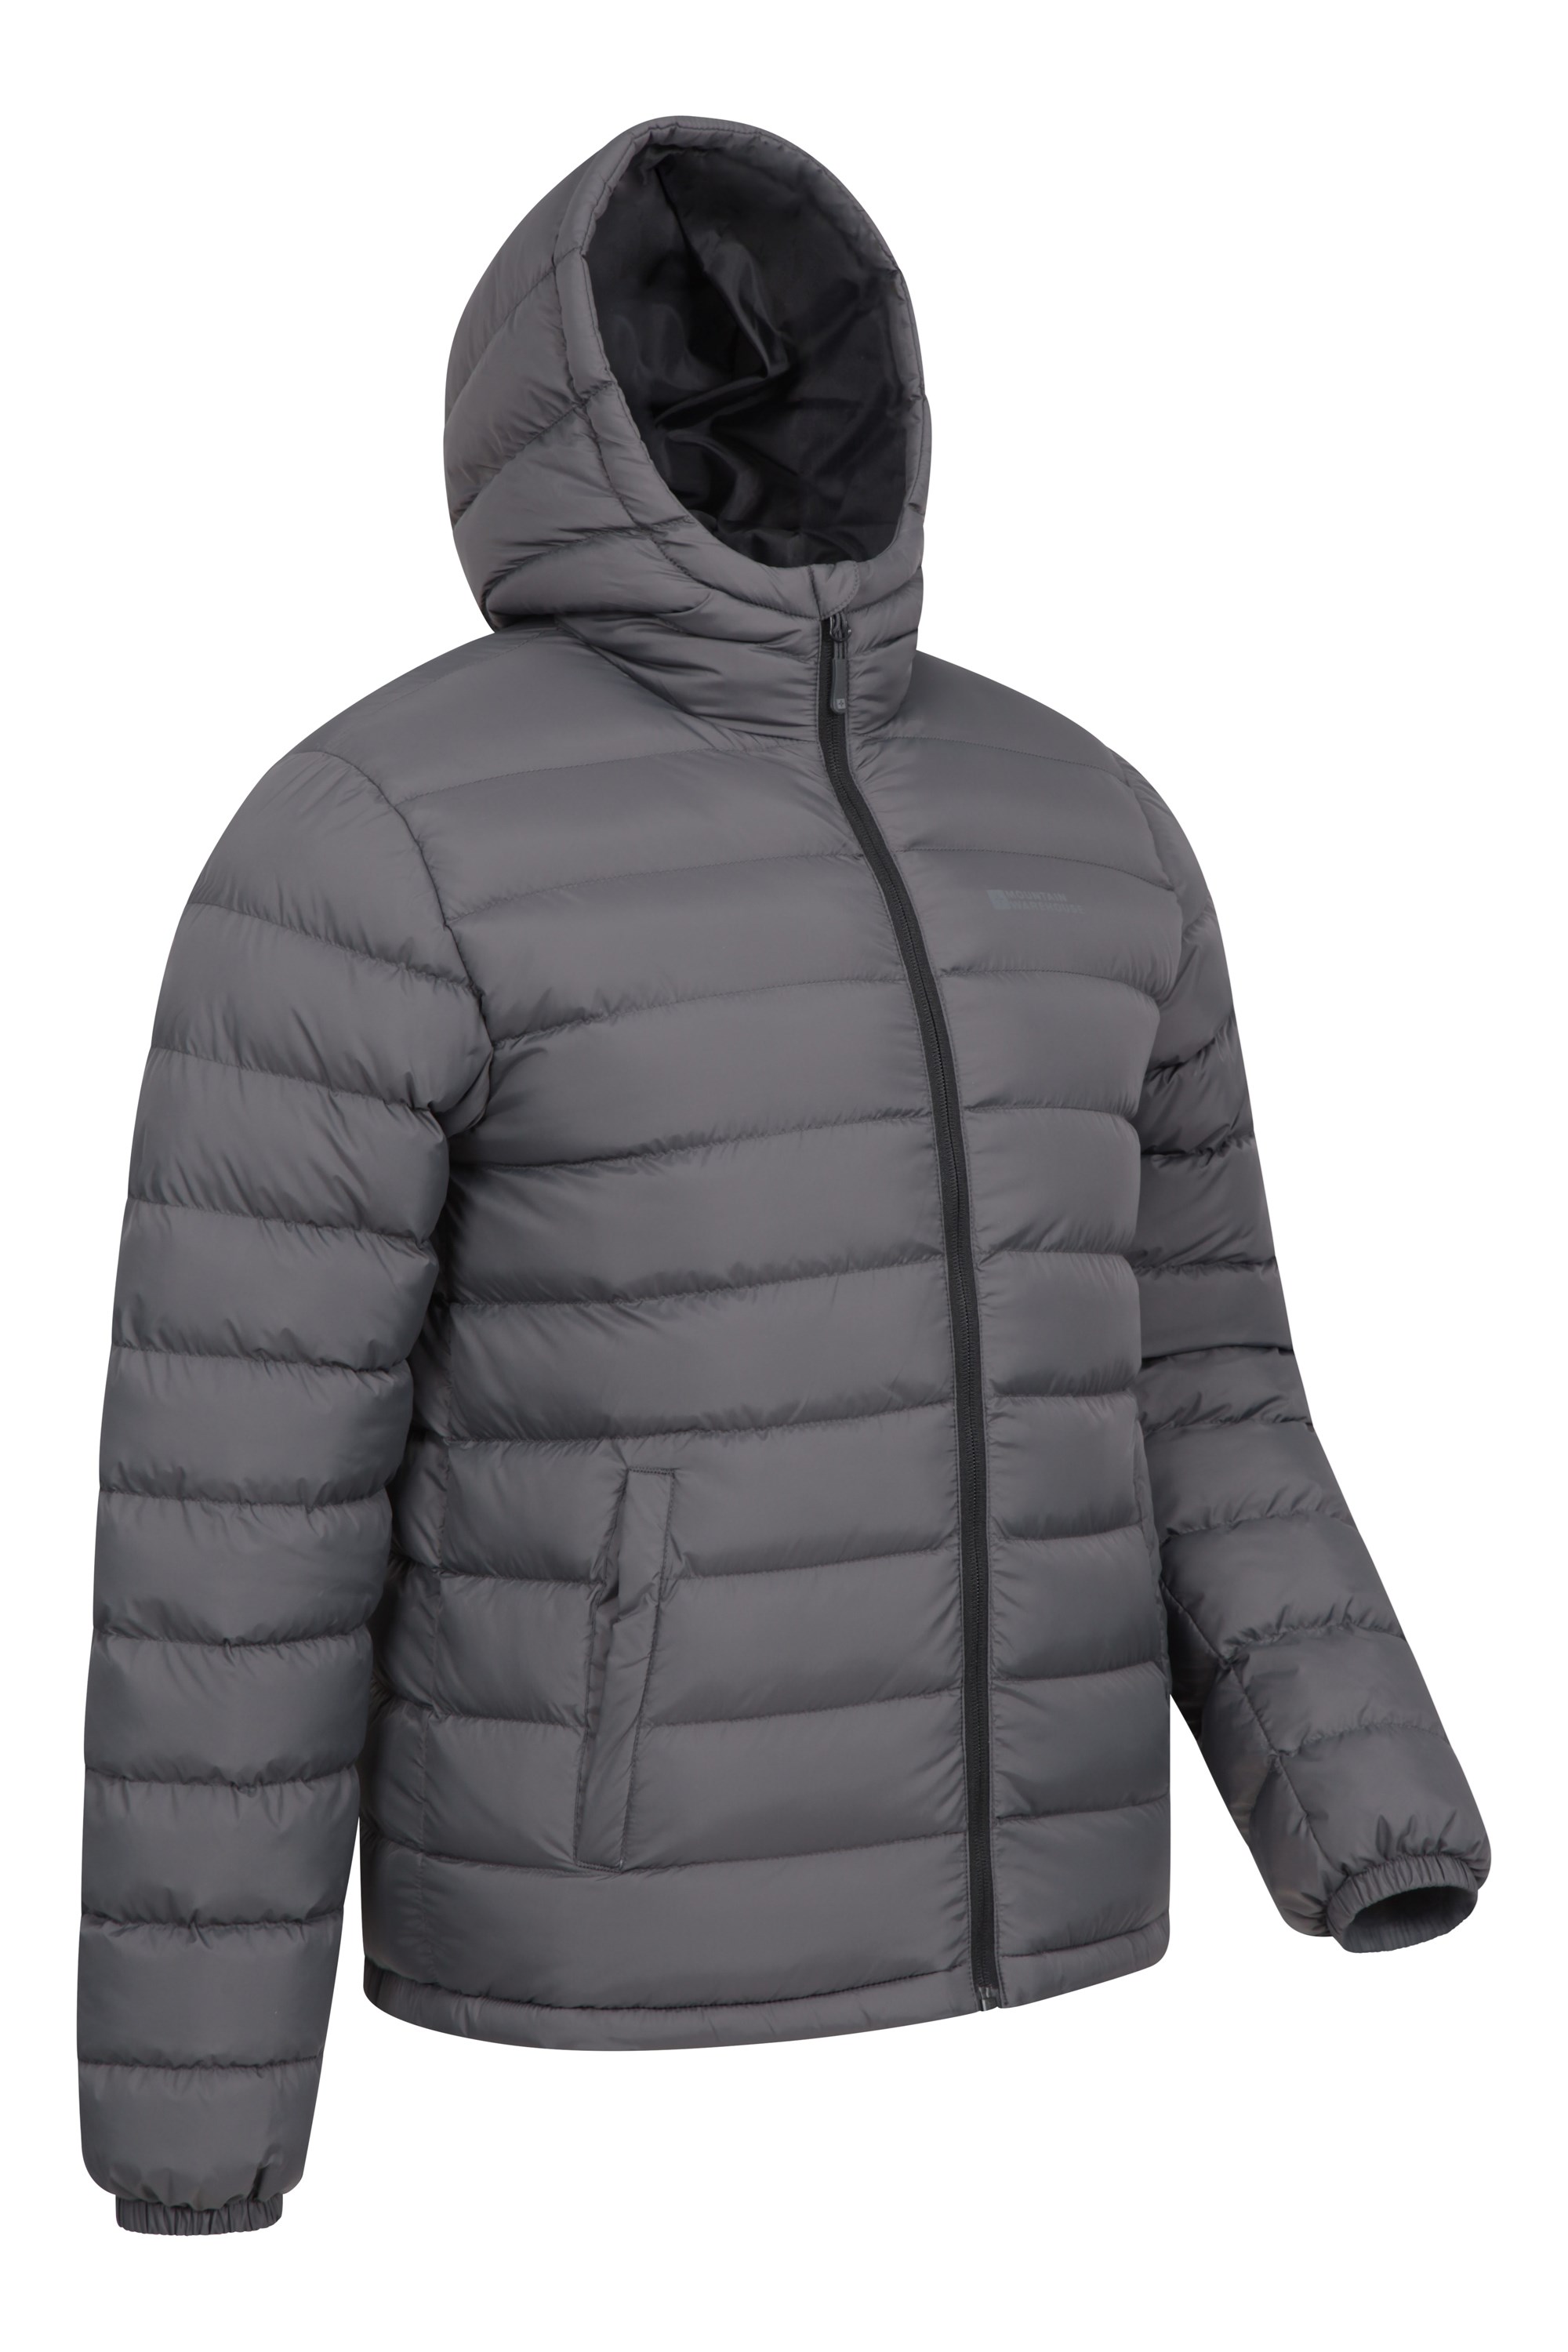 heymoney Men Winter Plus Size Coats Outdoor Solid Jacket Overcoat 